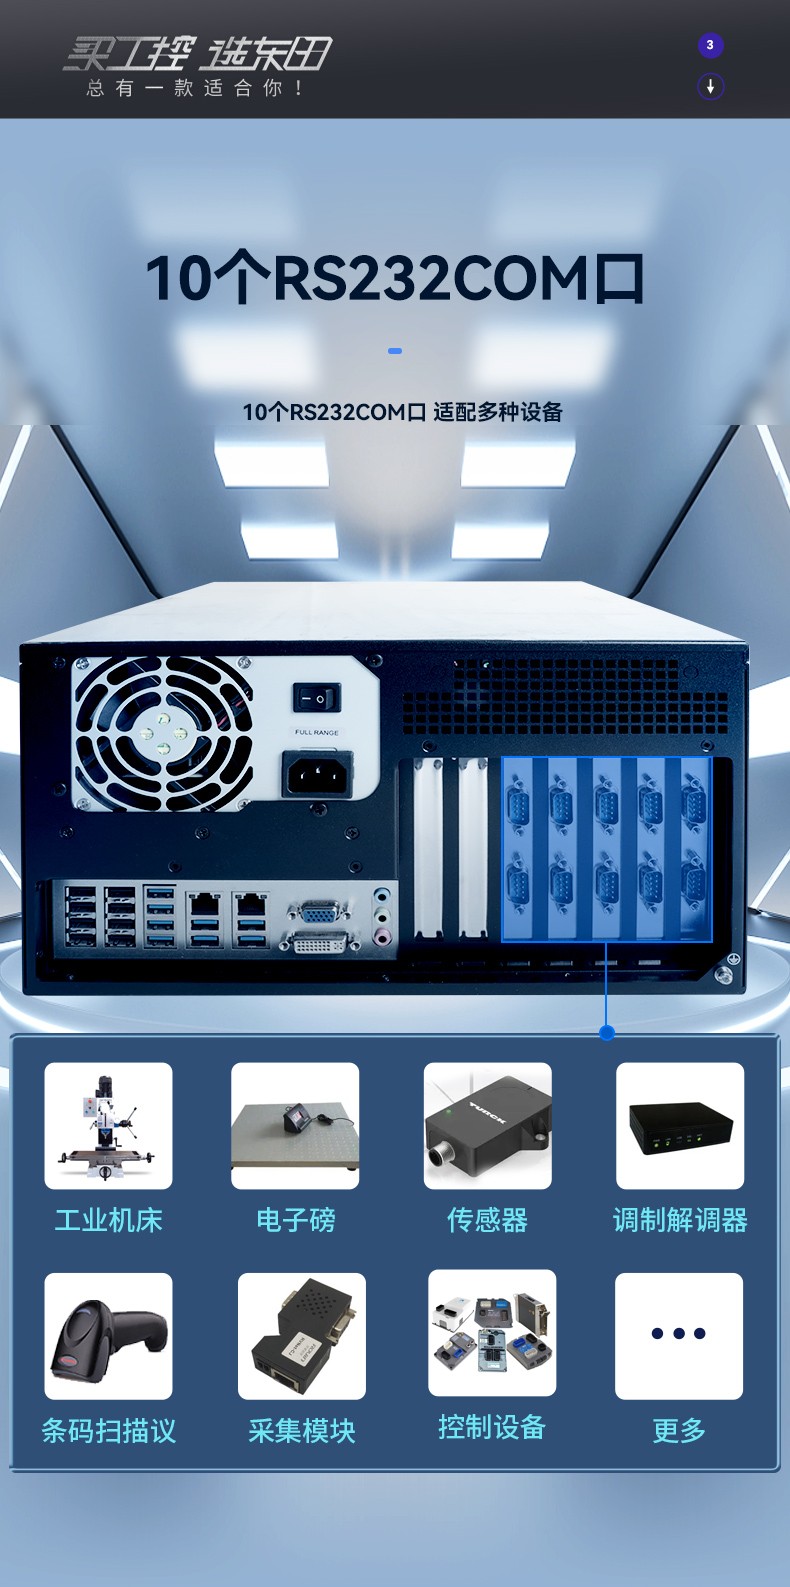 国产化壁挂式工控机,龙芯CPU工业电脑,DT-5307-H3A5KMC.jpg